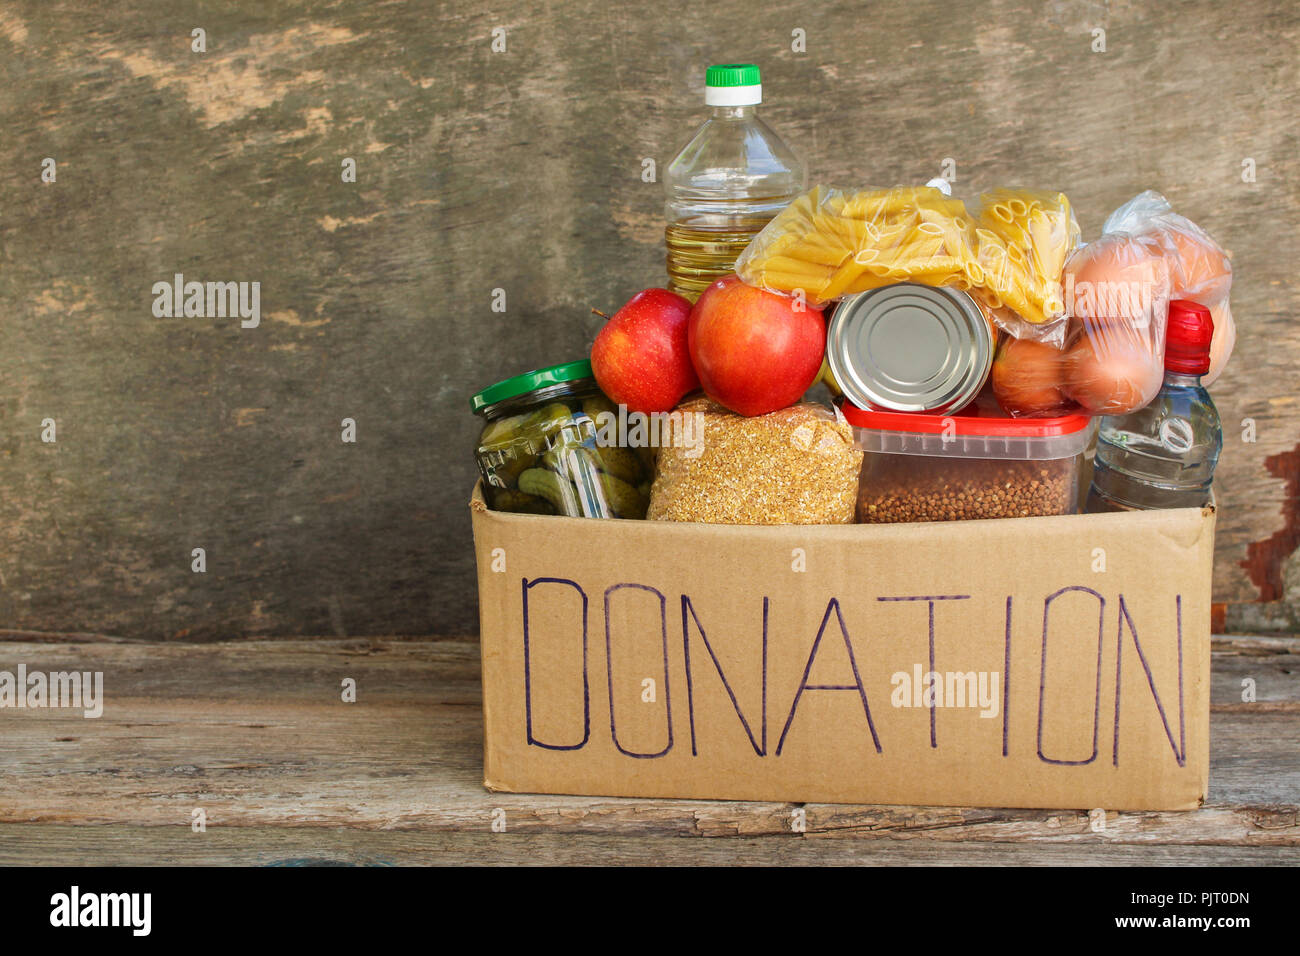 Donation box avec de la nourriture. Banque D'Images